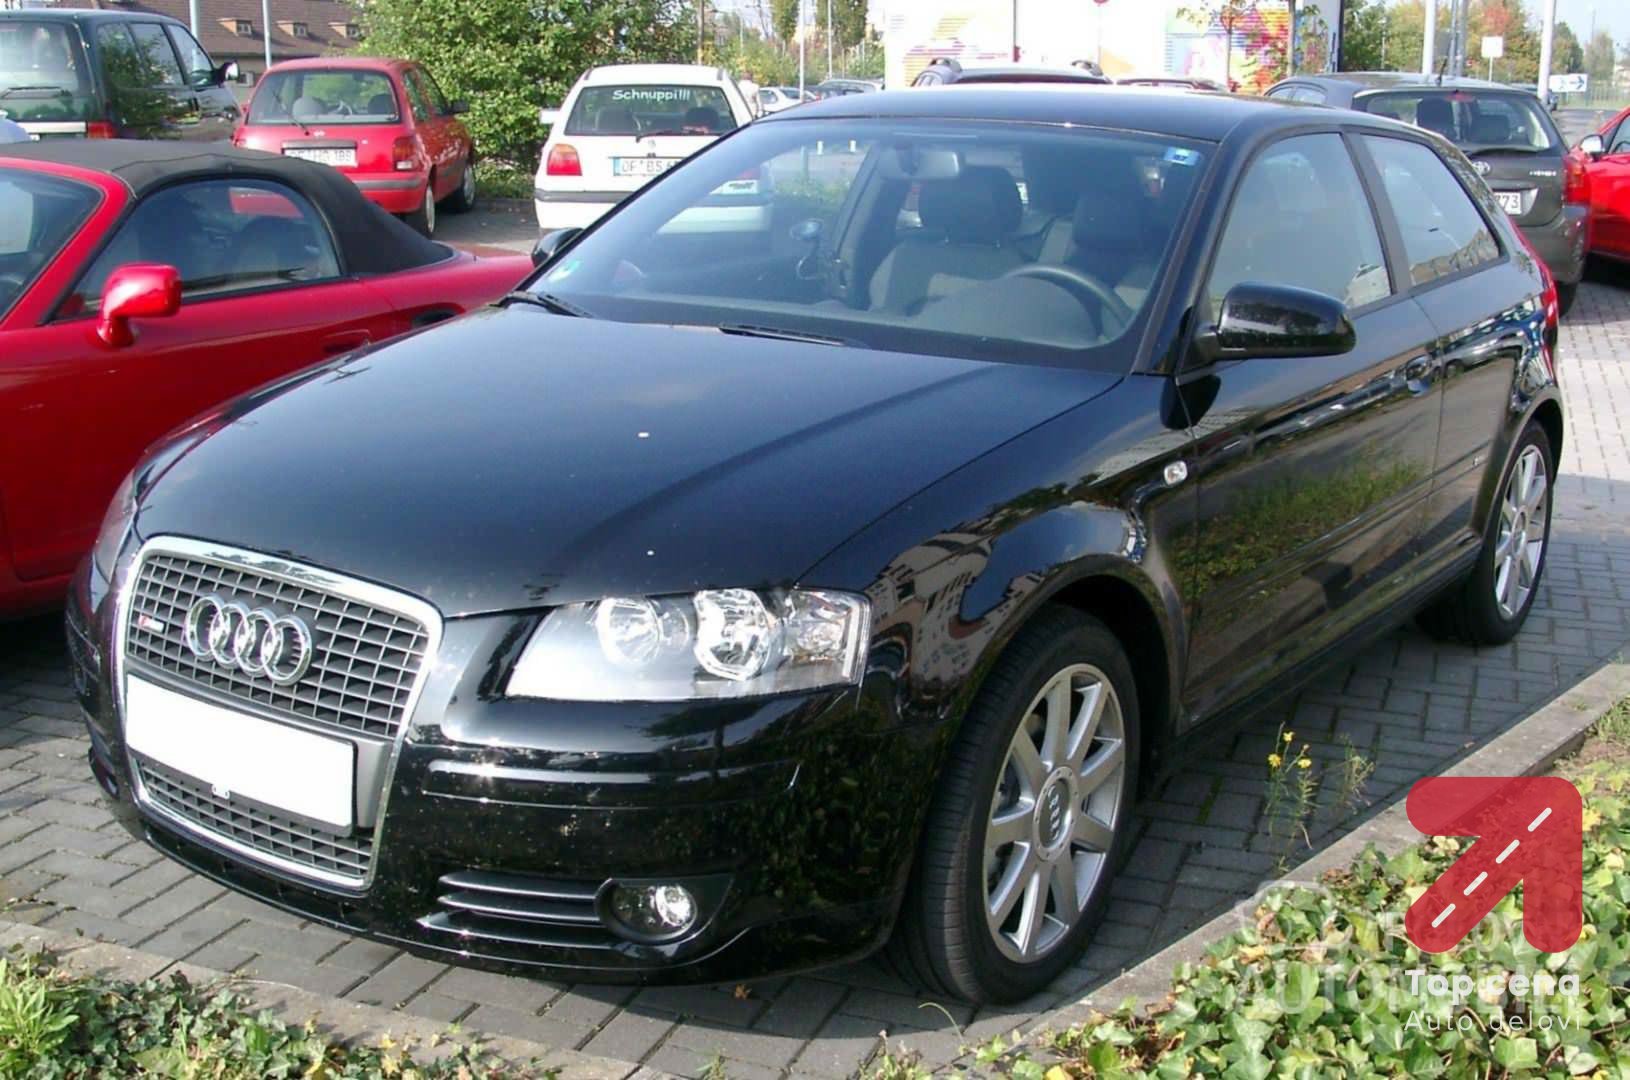 Originalni polovni delovi za Audi A3 od 2003. do 2008. god.